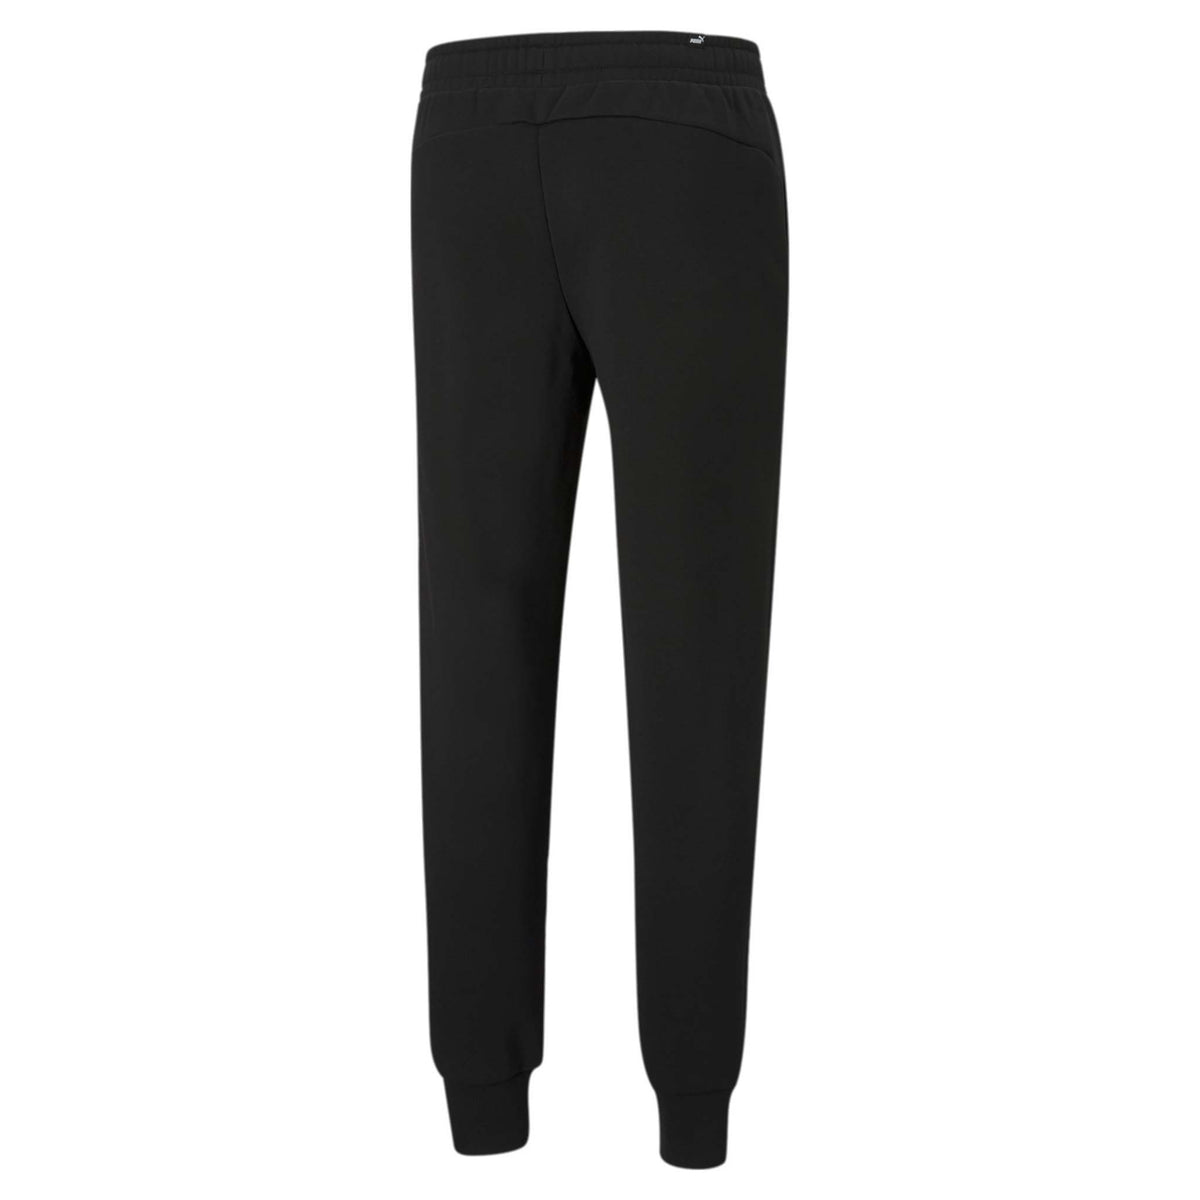 Pantalon style jogger coton ouaté noir pour homme Puma Essential Logo dos